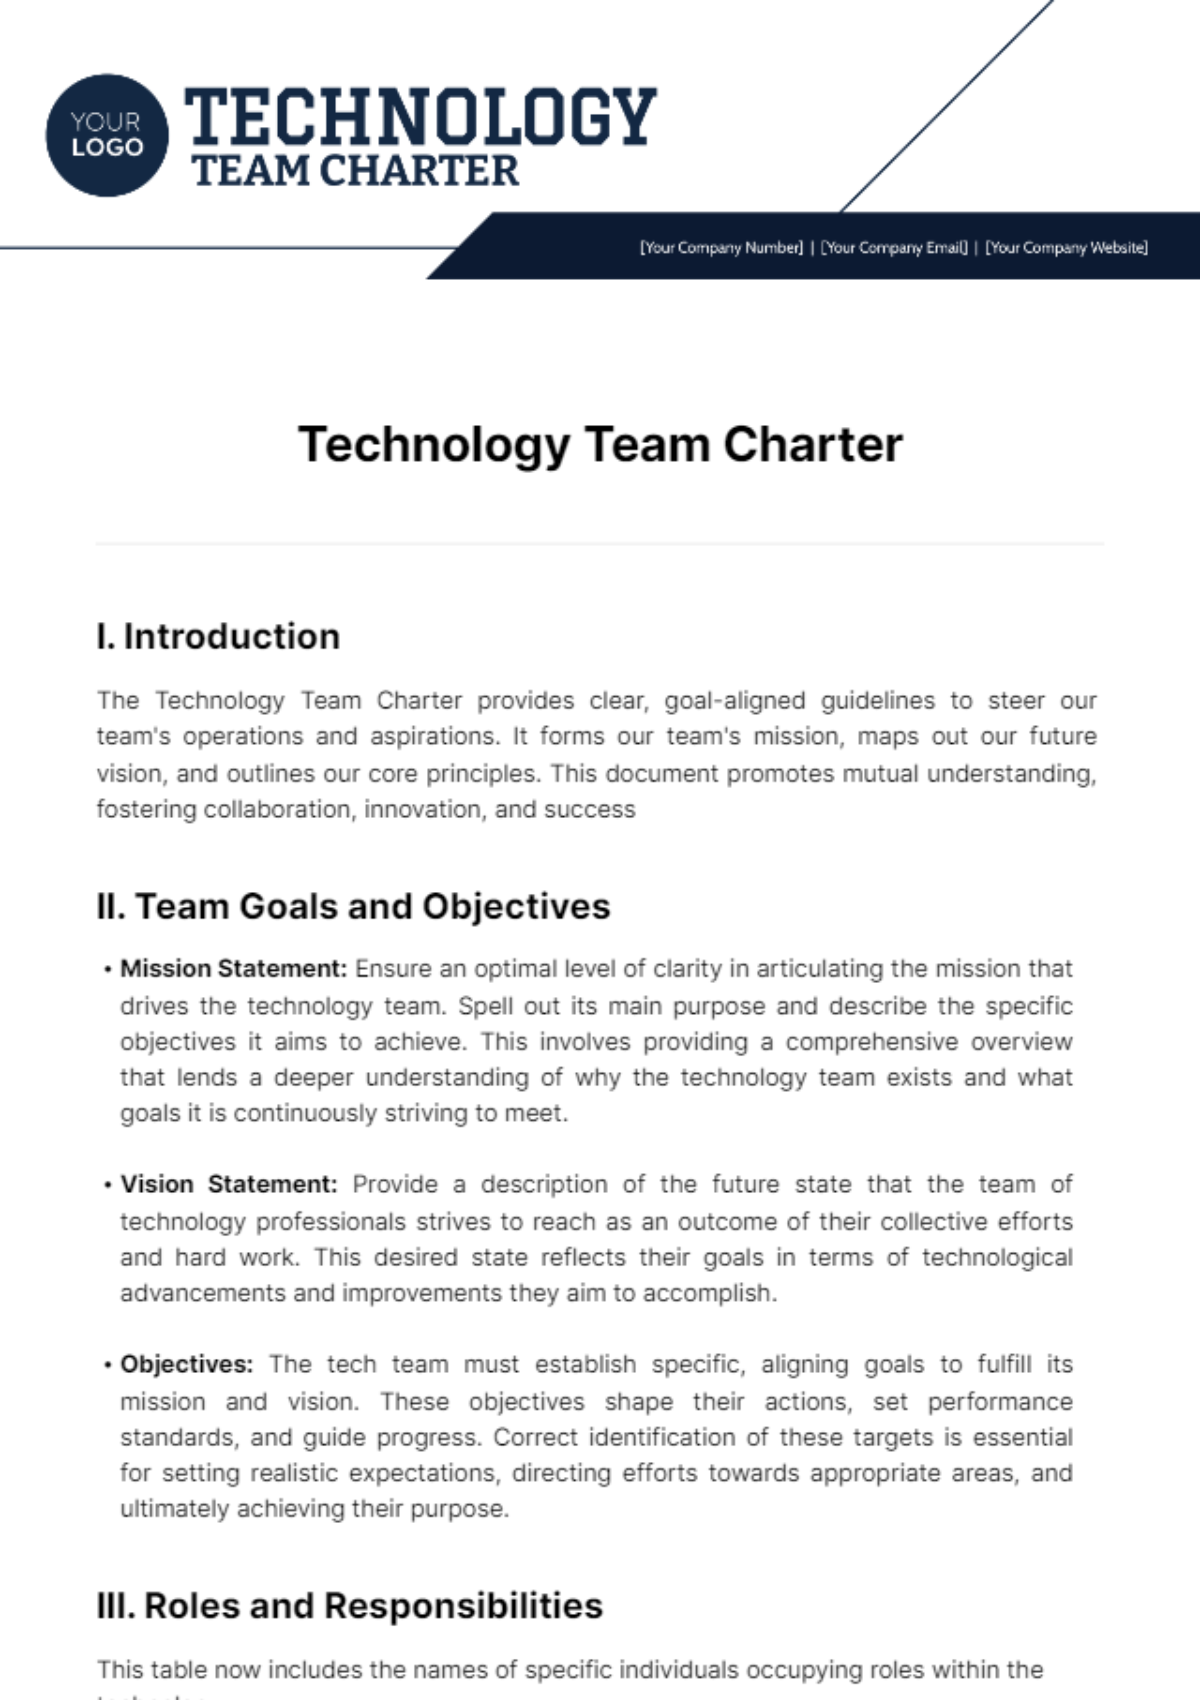 Technology Team Charter Template